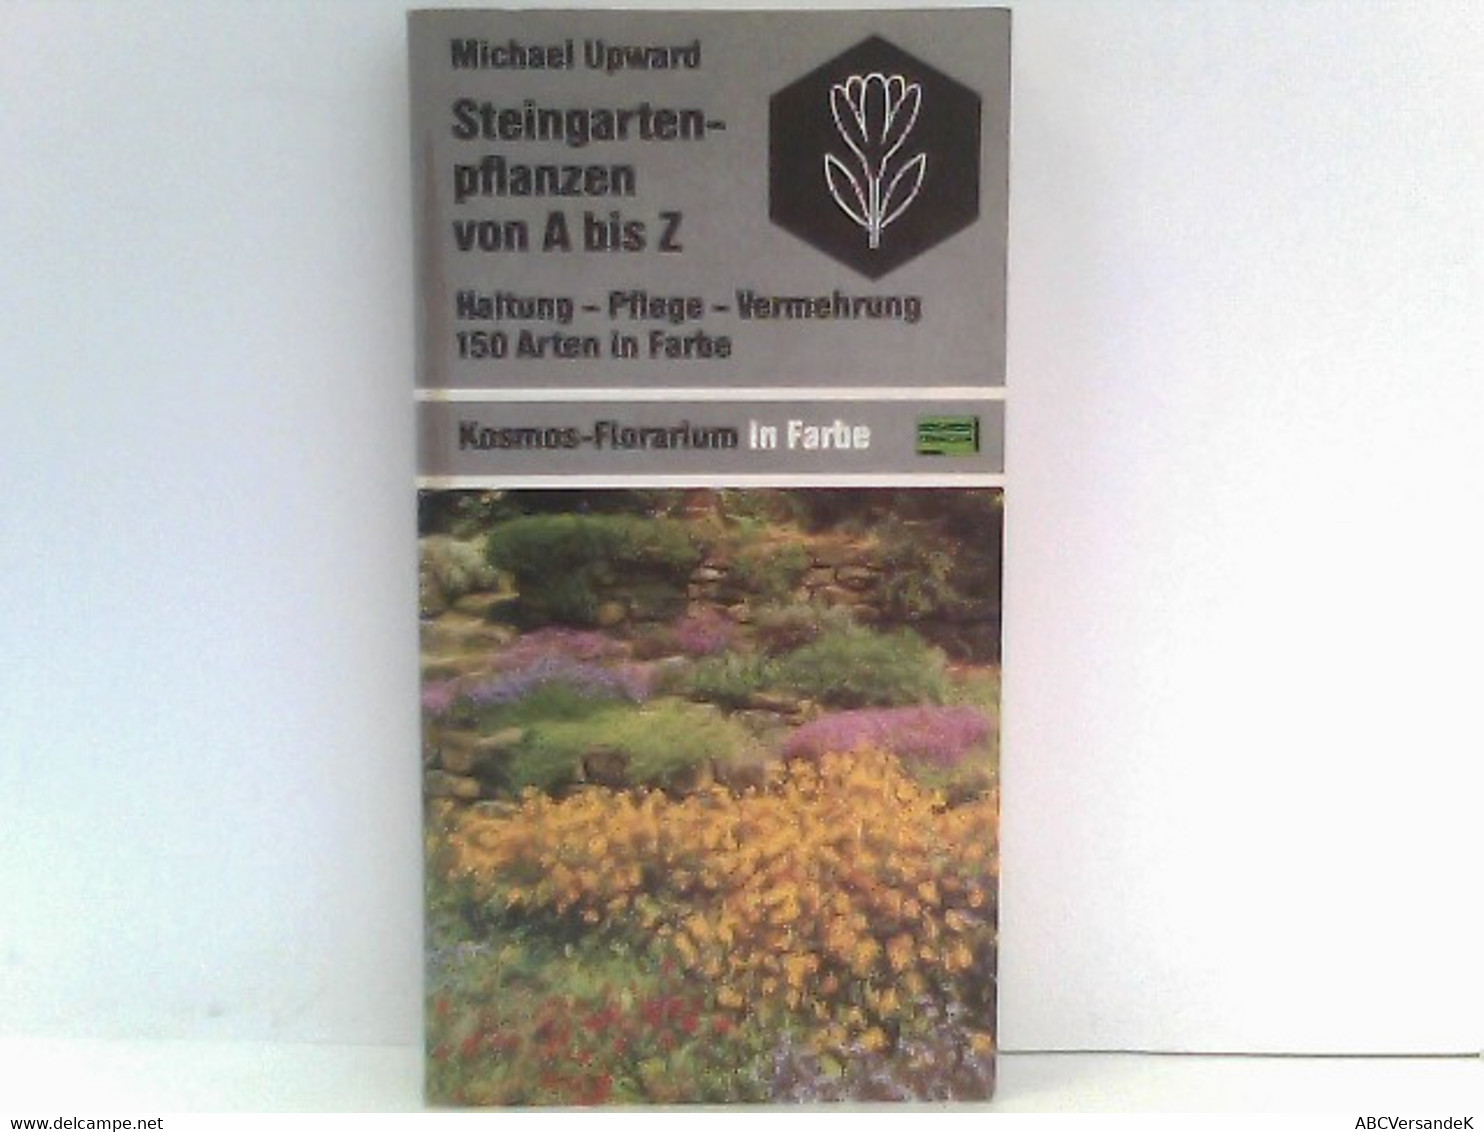 Steingartenpflanzen Von A Bis Z: Haltung - Pflege - Vermehrung. 150 Arten In Farbe (Kosmos-Florarium In Farbe) - Natura